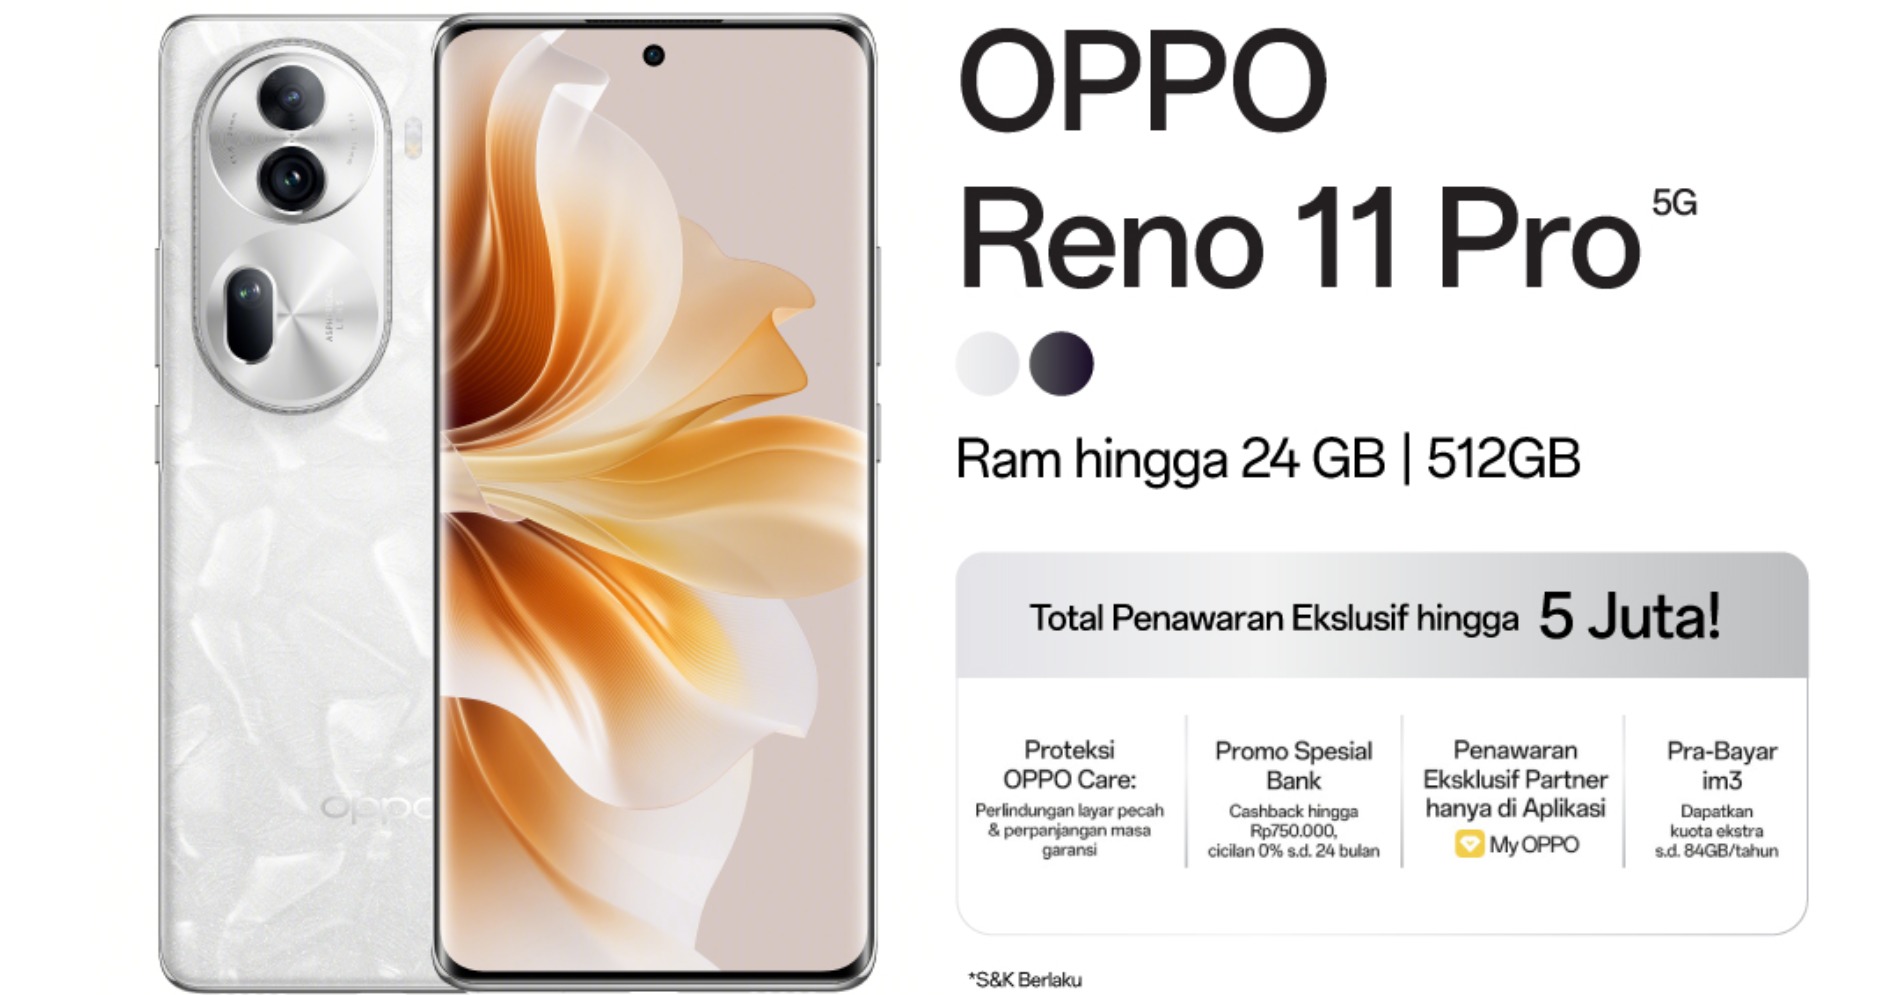 Oppo Reno 11 Pro 5G (Sumber gambar: Oppo Indonesia)